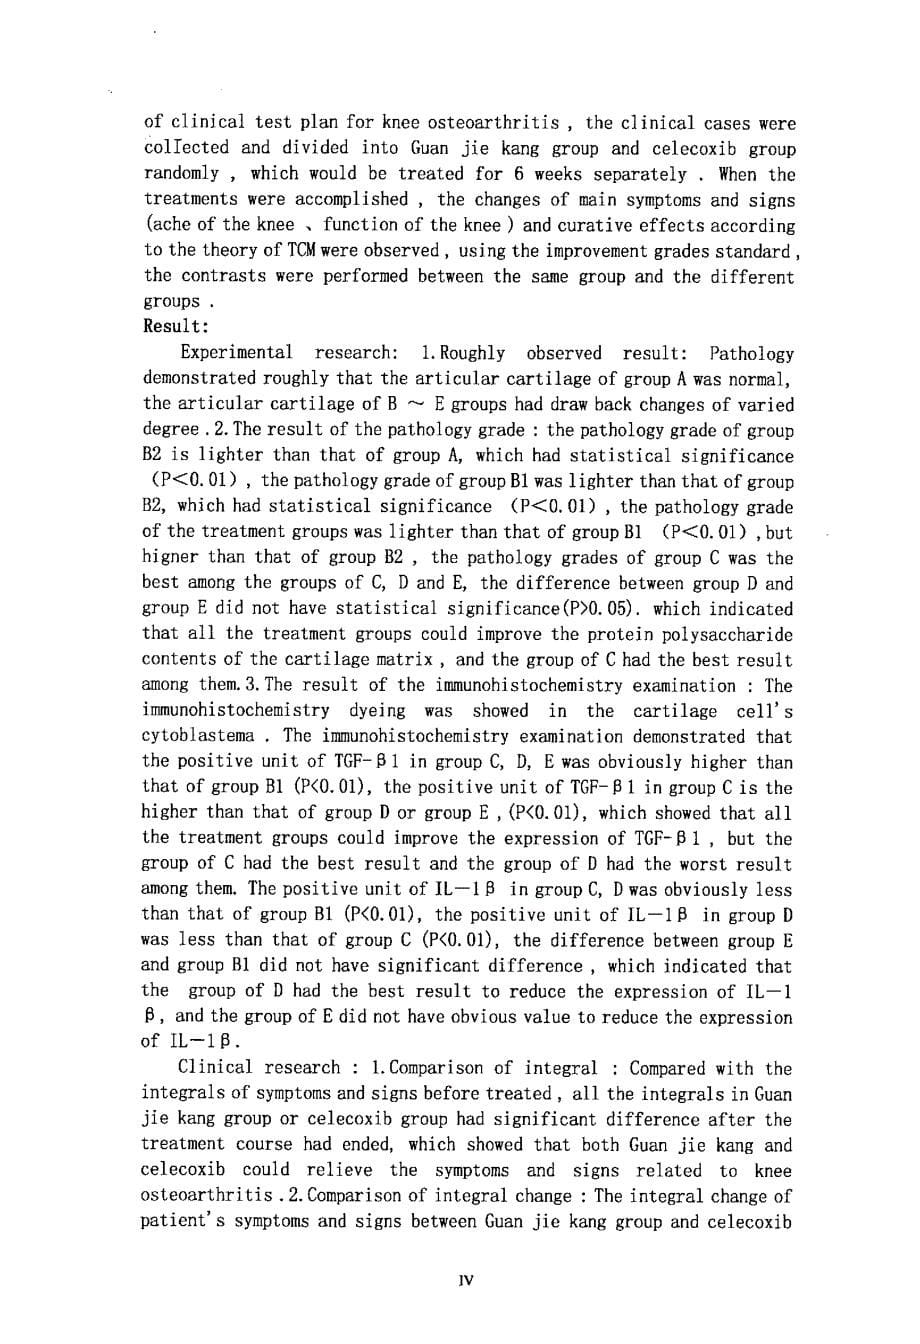 关节康治疗膝骨性关节炎的实验与临床研究_第5页